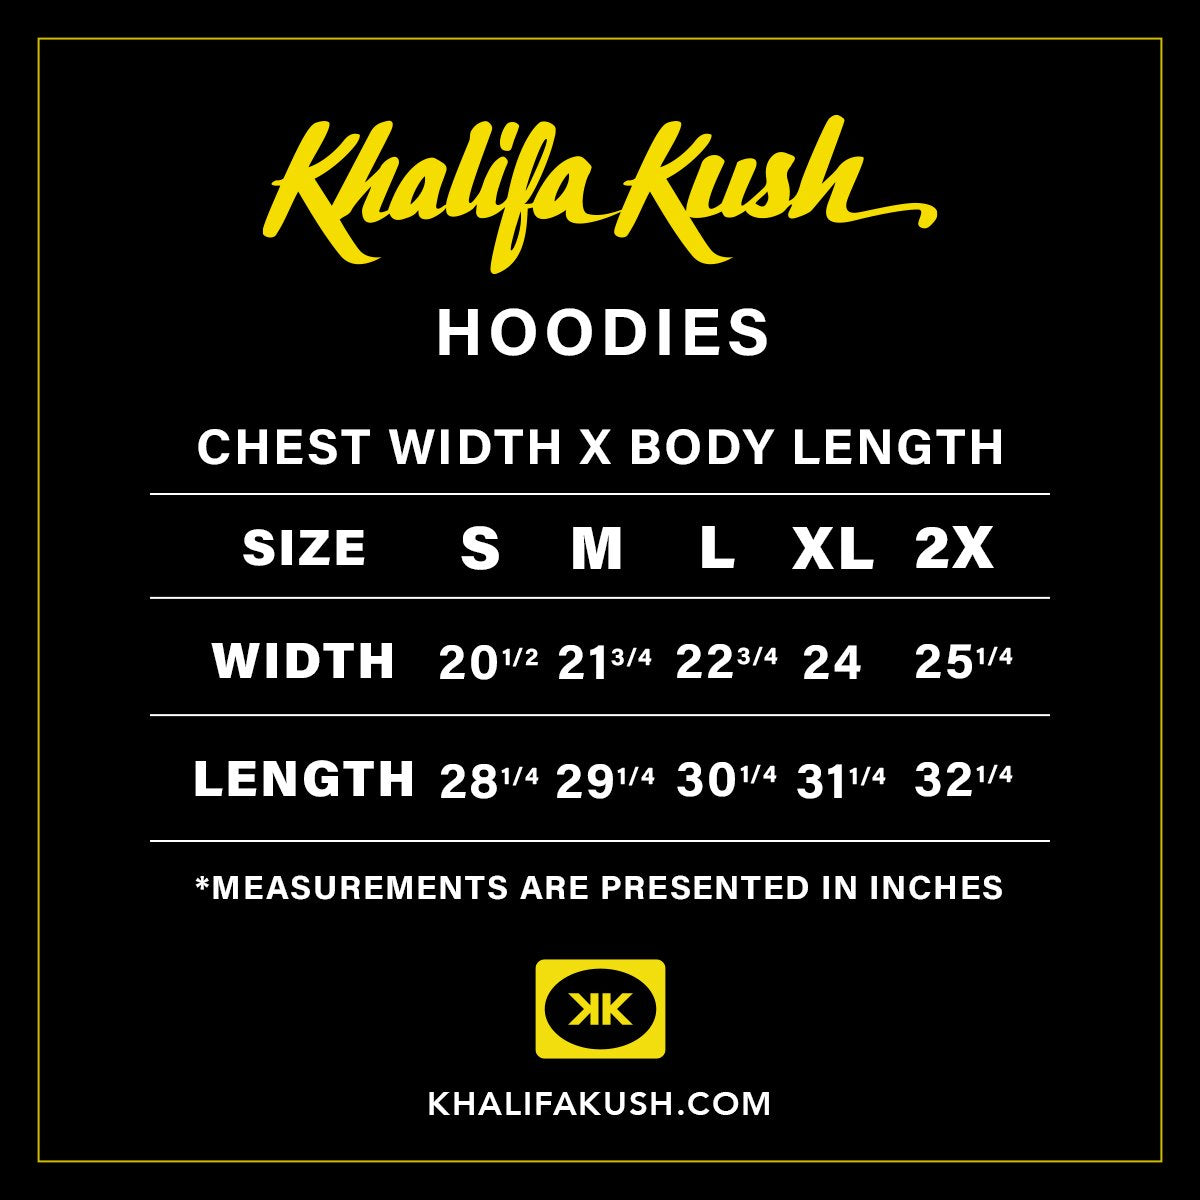 Smoke Better Hoodie - Khalifa Kush